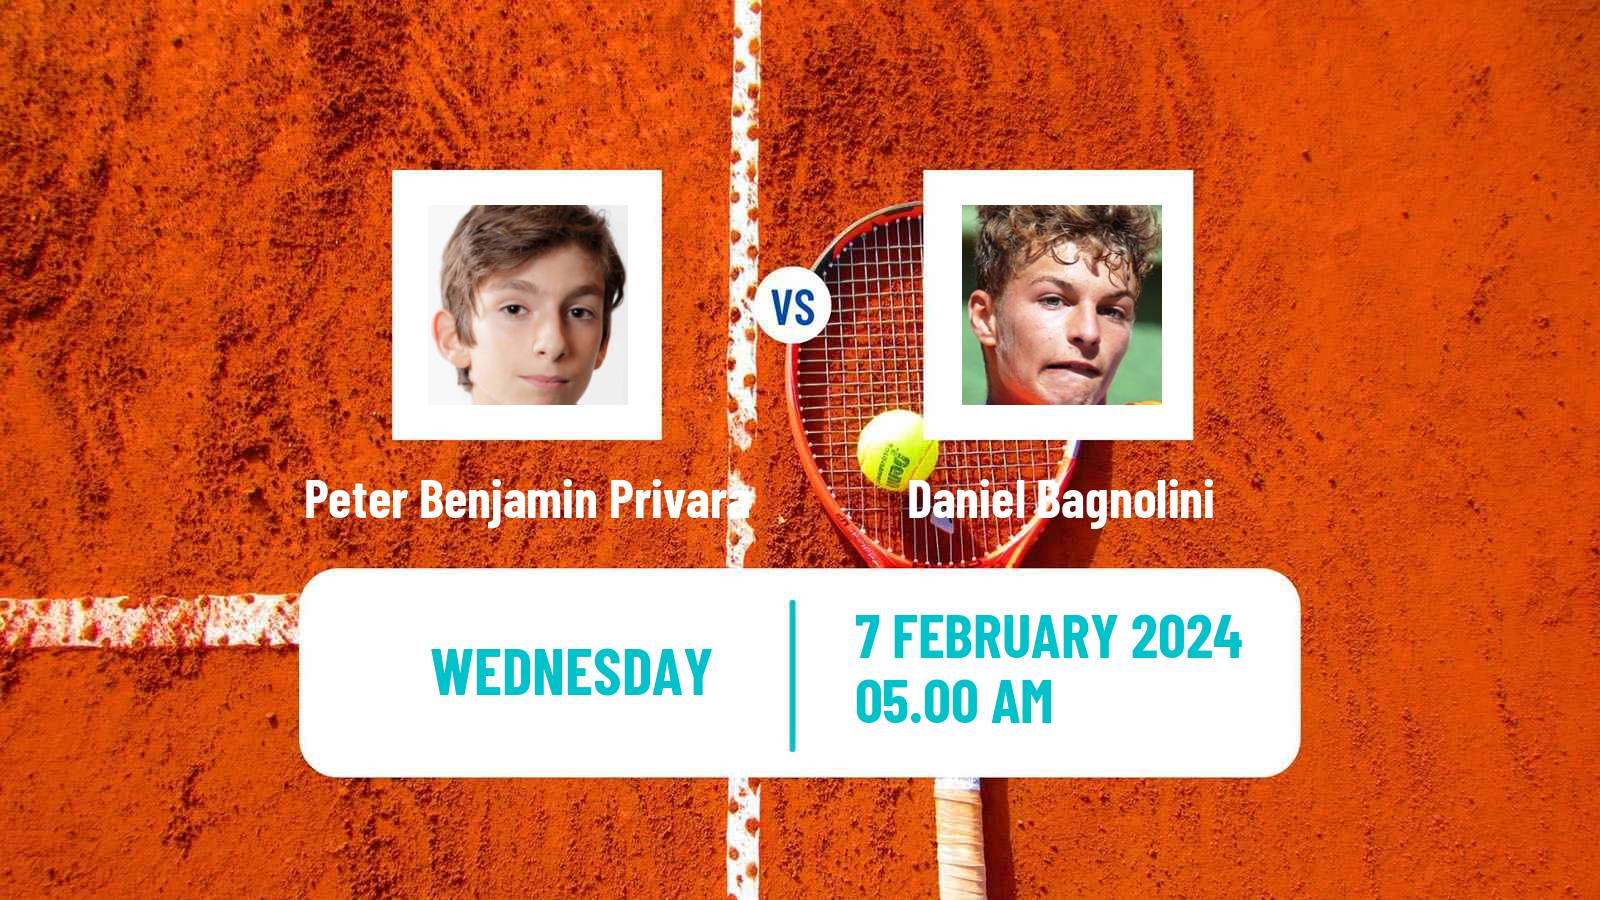 Tennis ITF M25 Hammamet 2 Men Peter Benjamin Privara - Daniel Bagnolini